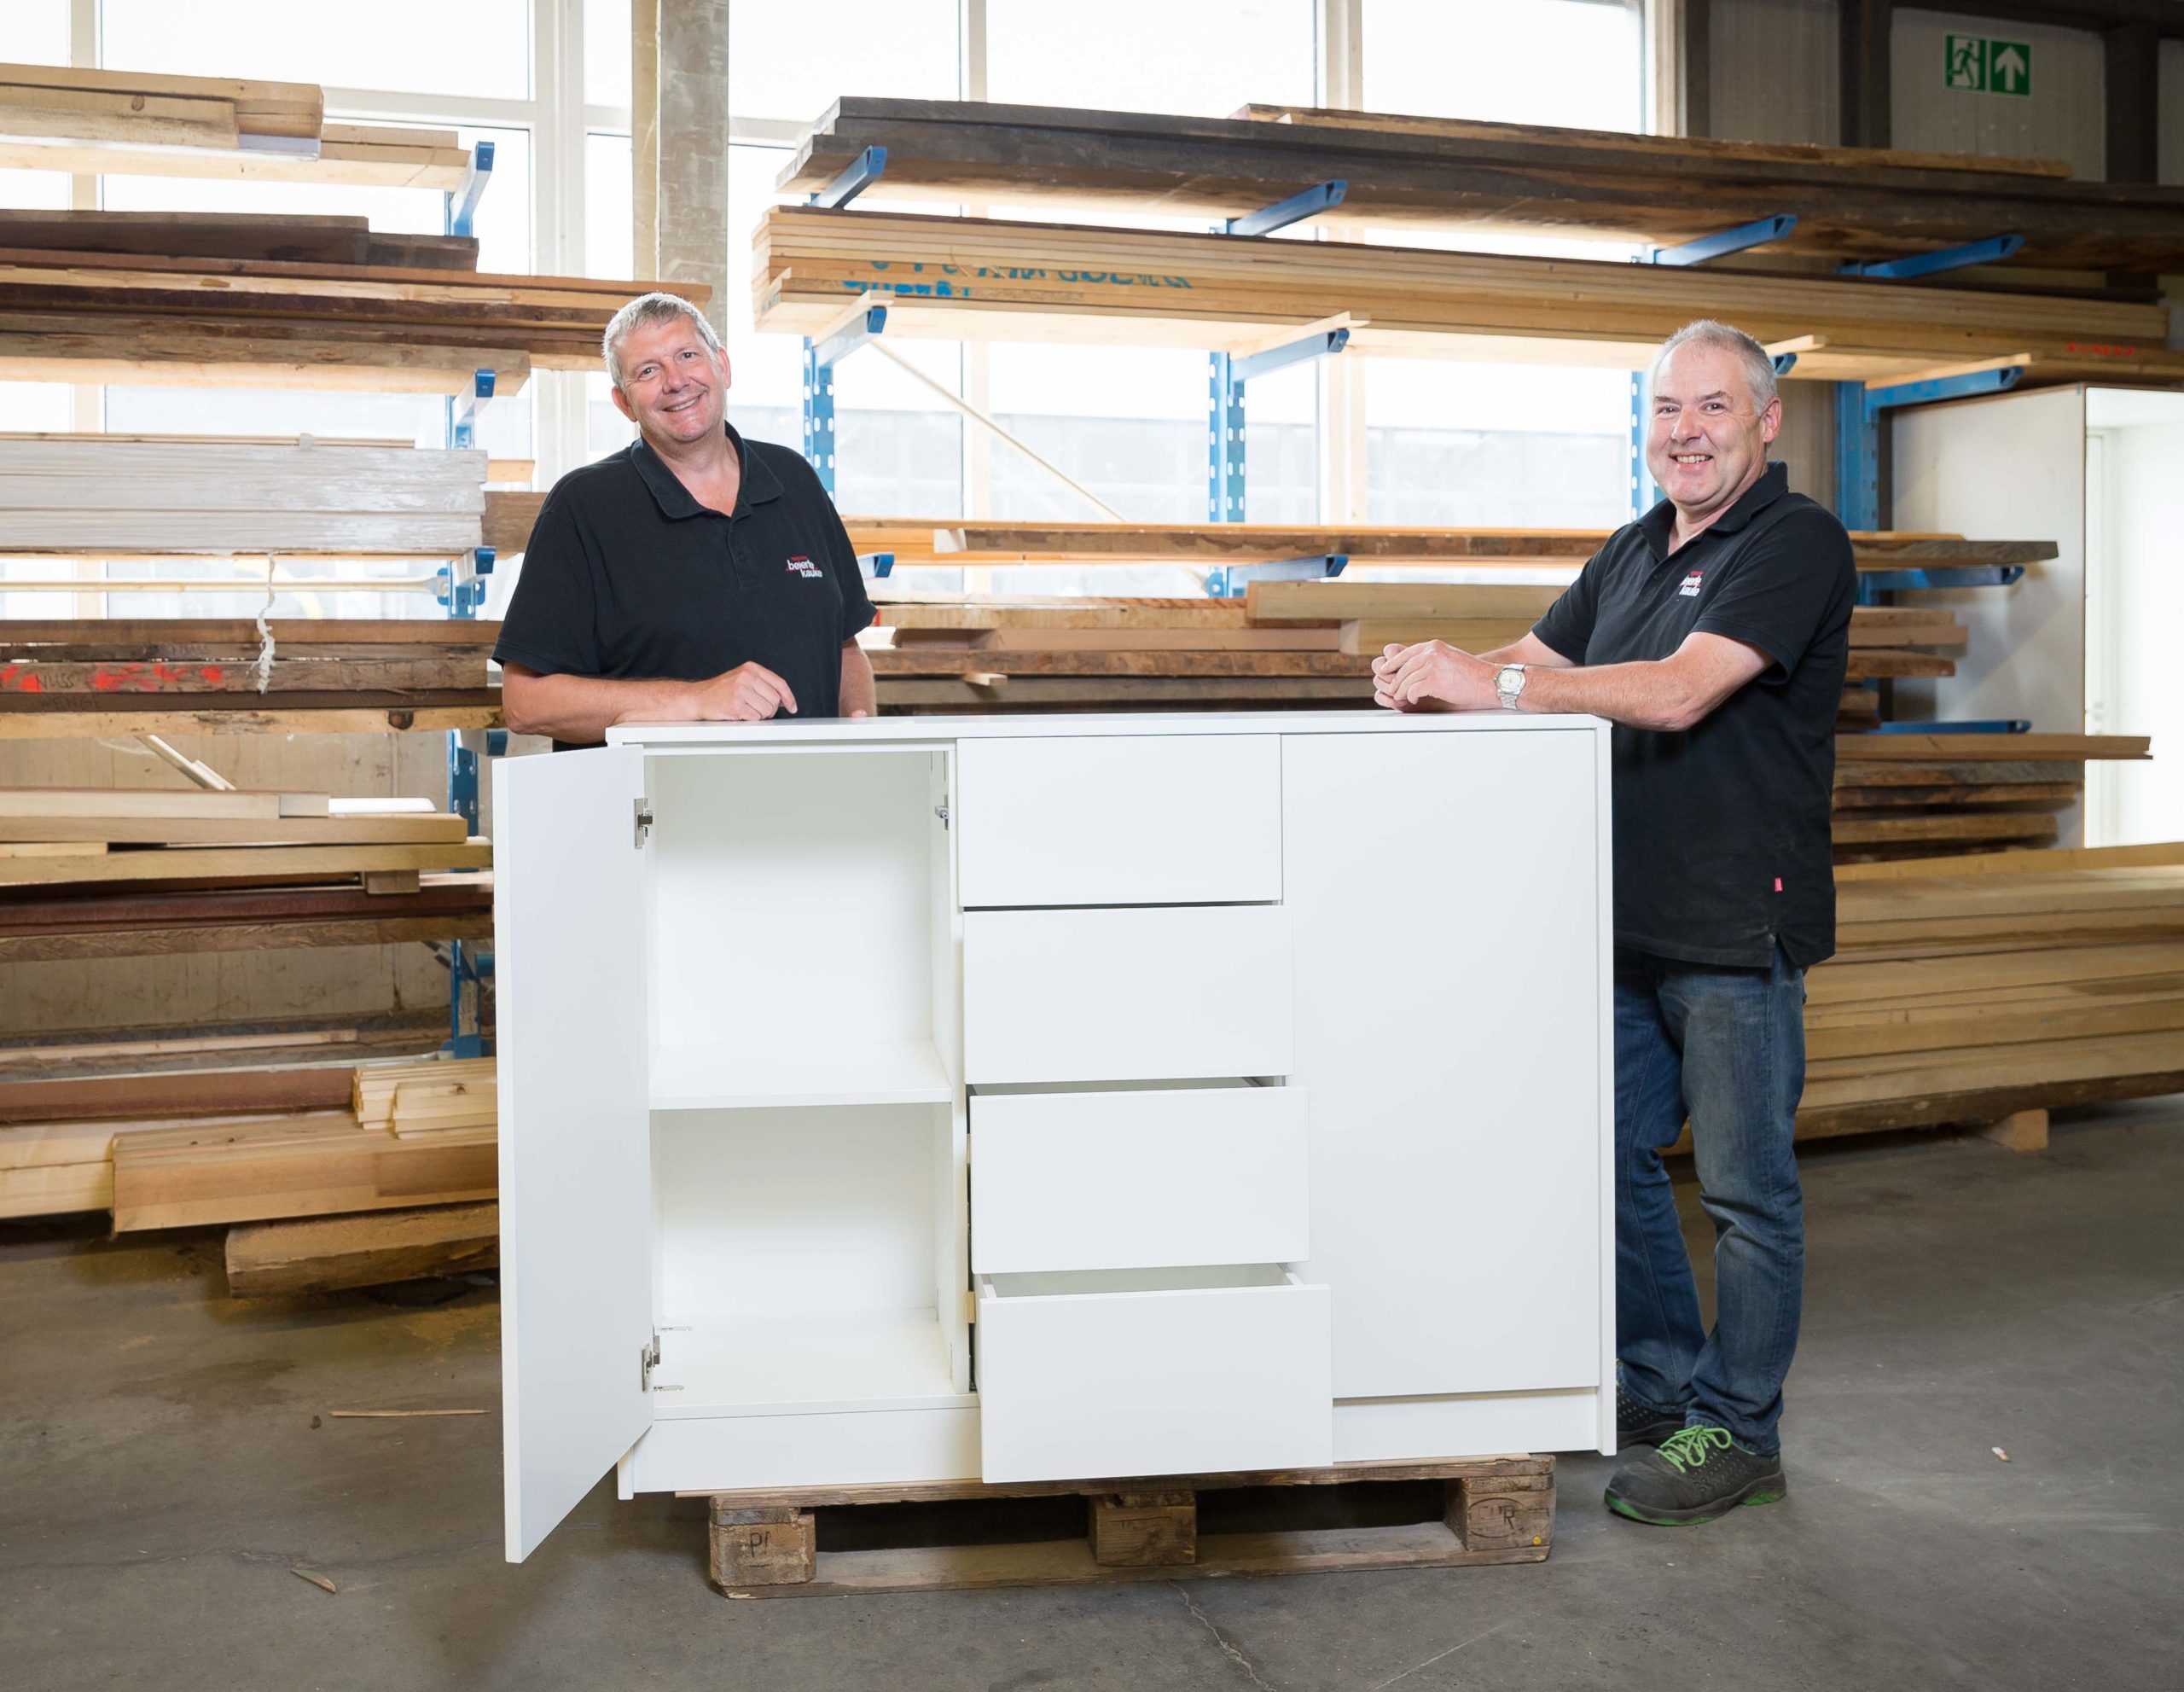 Individuelle, maßgefertigte Möbel gehören zum Leistungsspektrum des Wickeder Tischlereibetriebs von Frank Beierle (links) und Stephan Kauke.